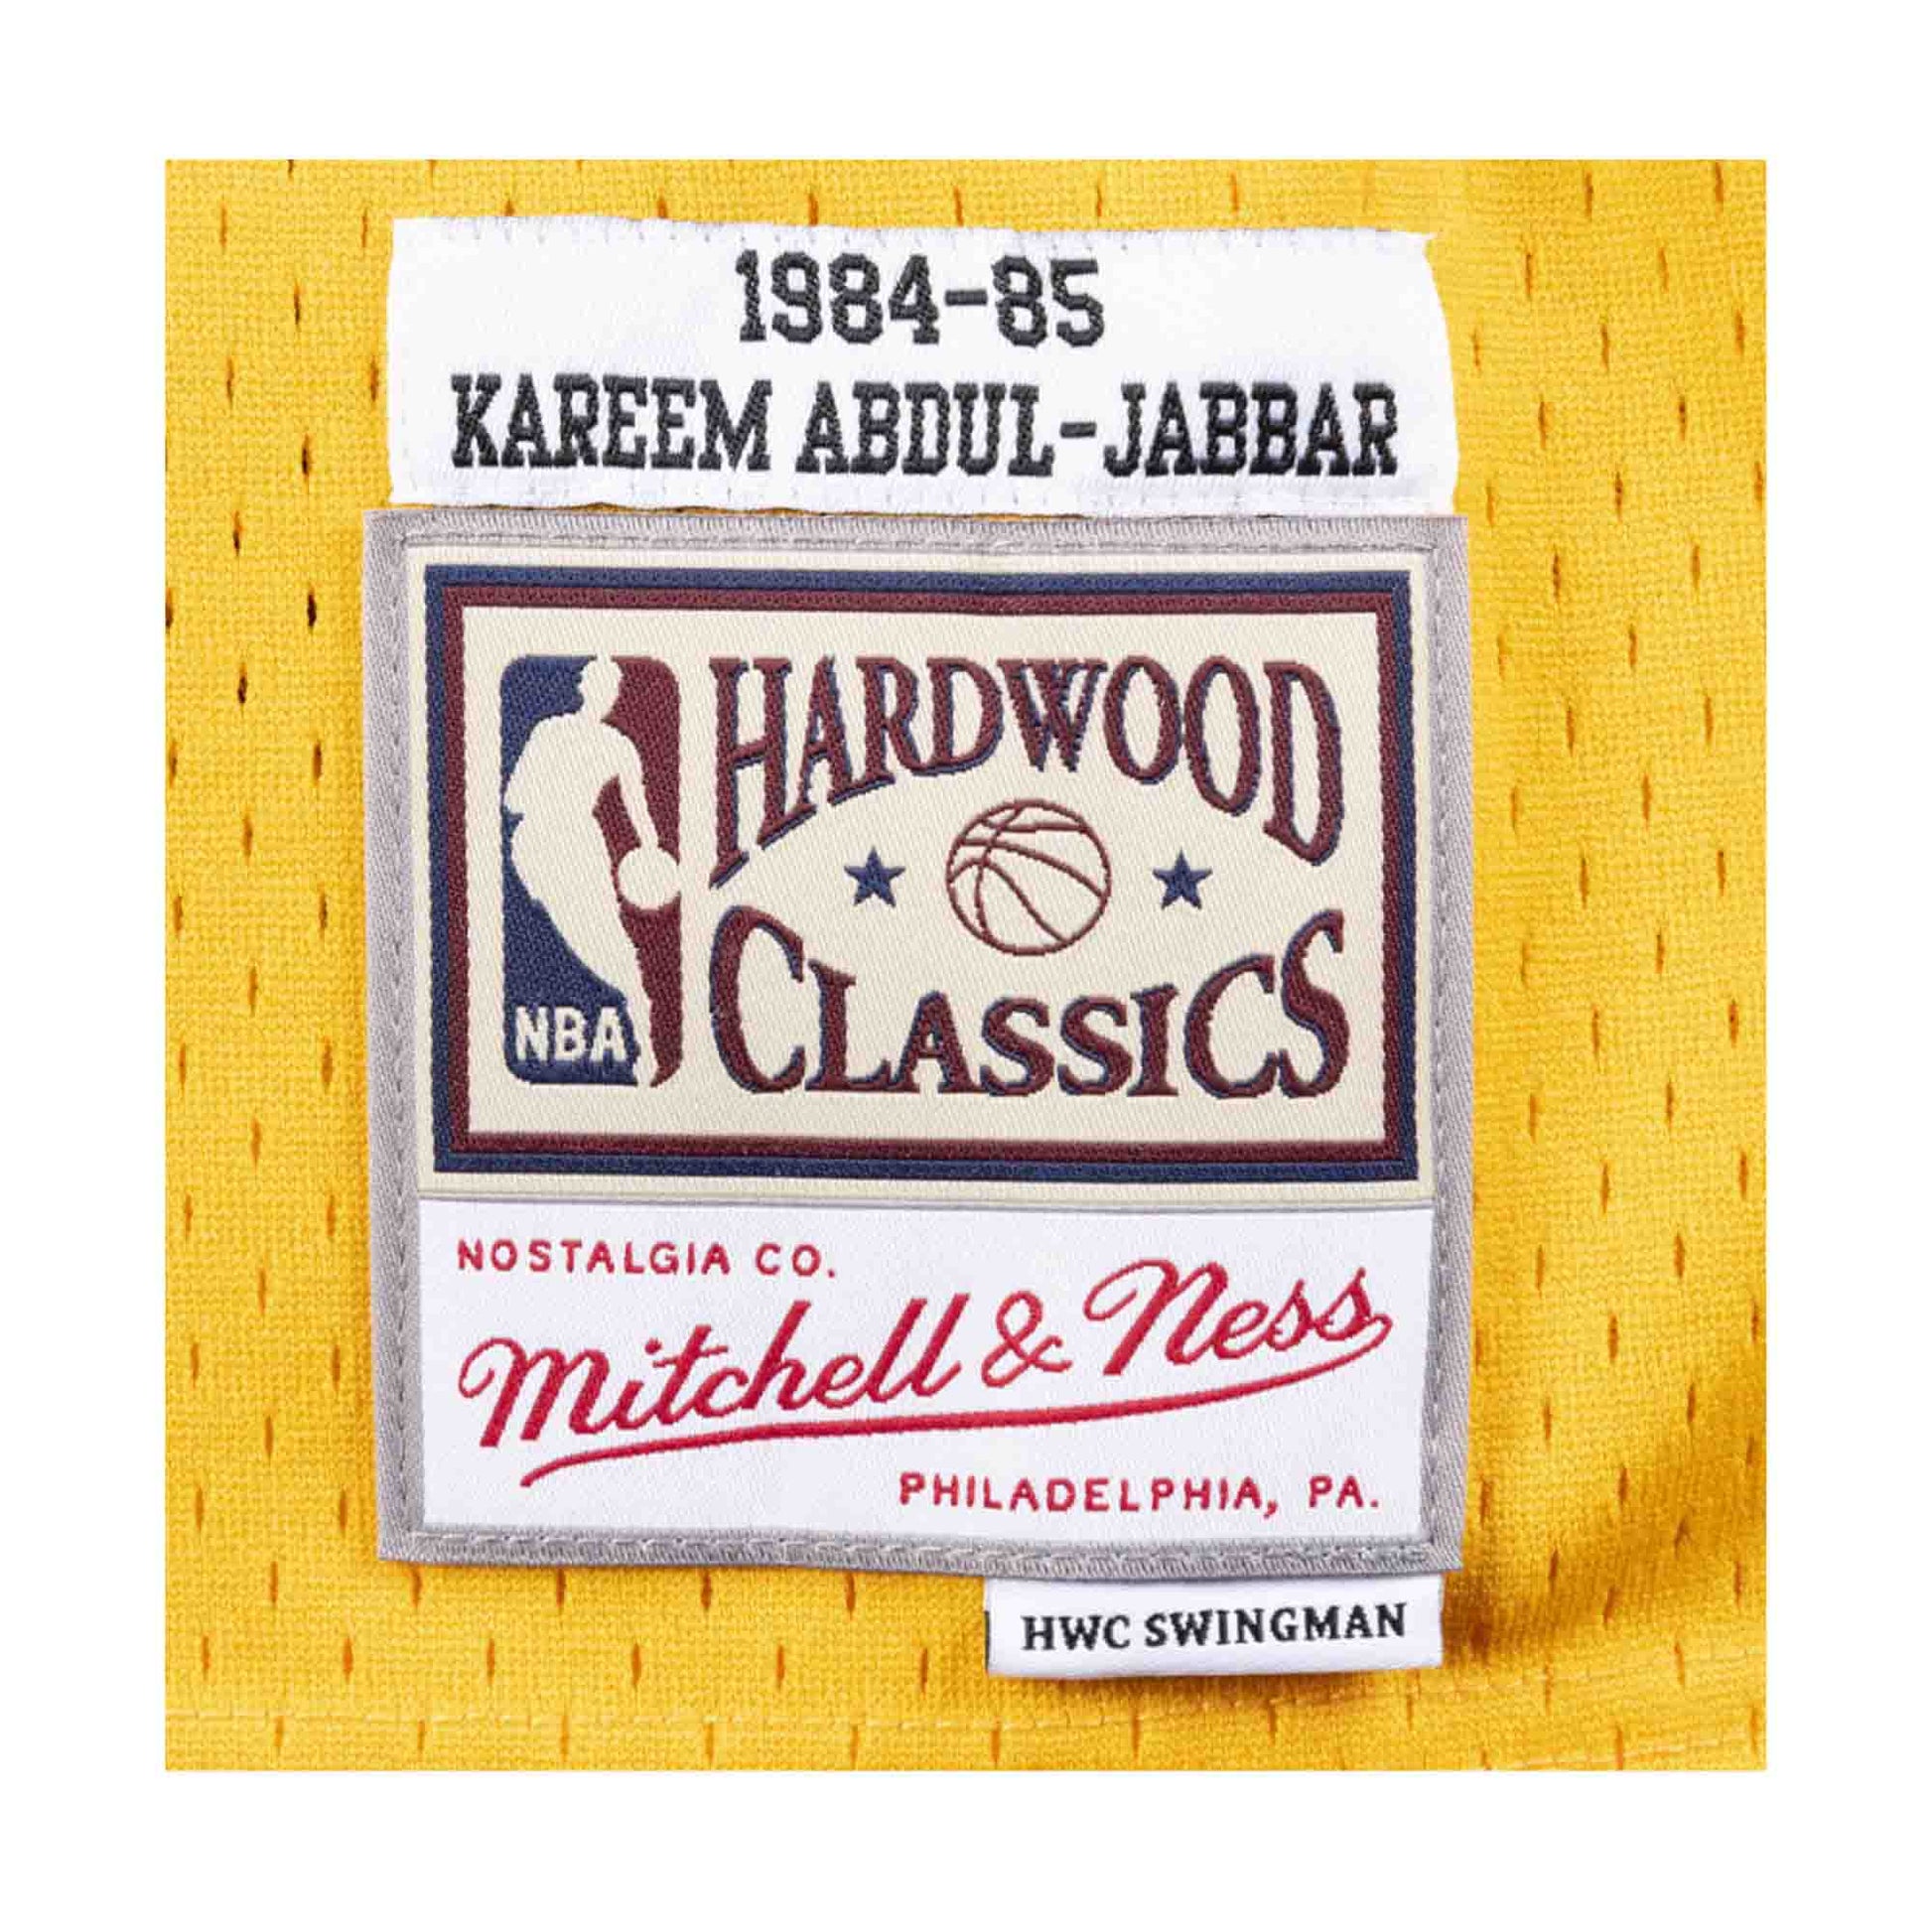 Kareem Abdul-Jabbar 1984-85 Lakers Home Hardwood Classic Swingman